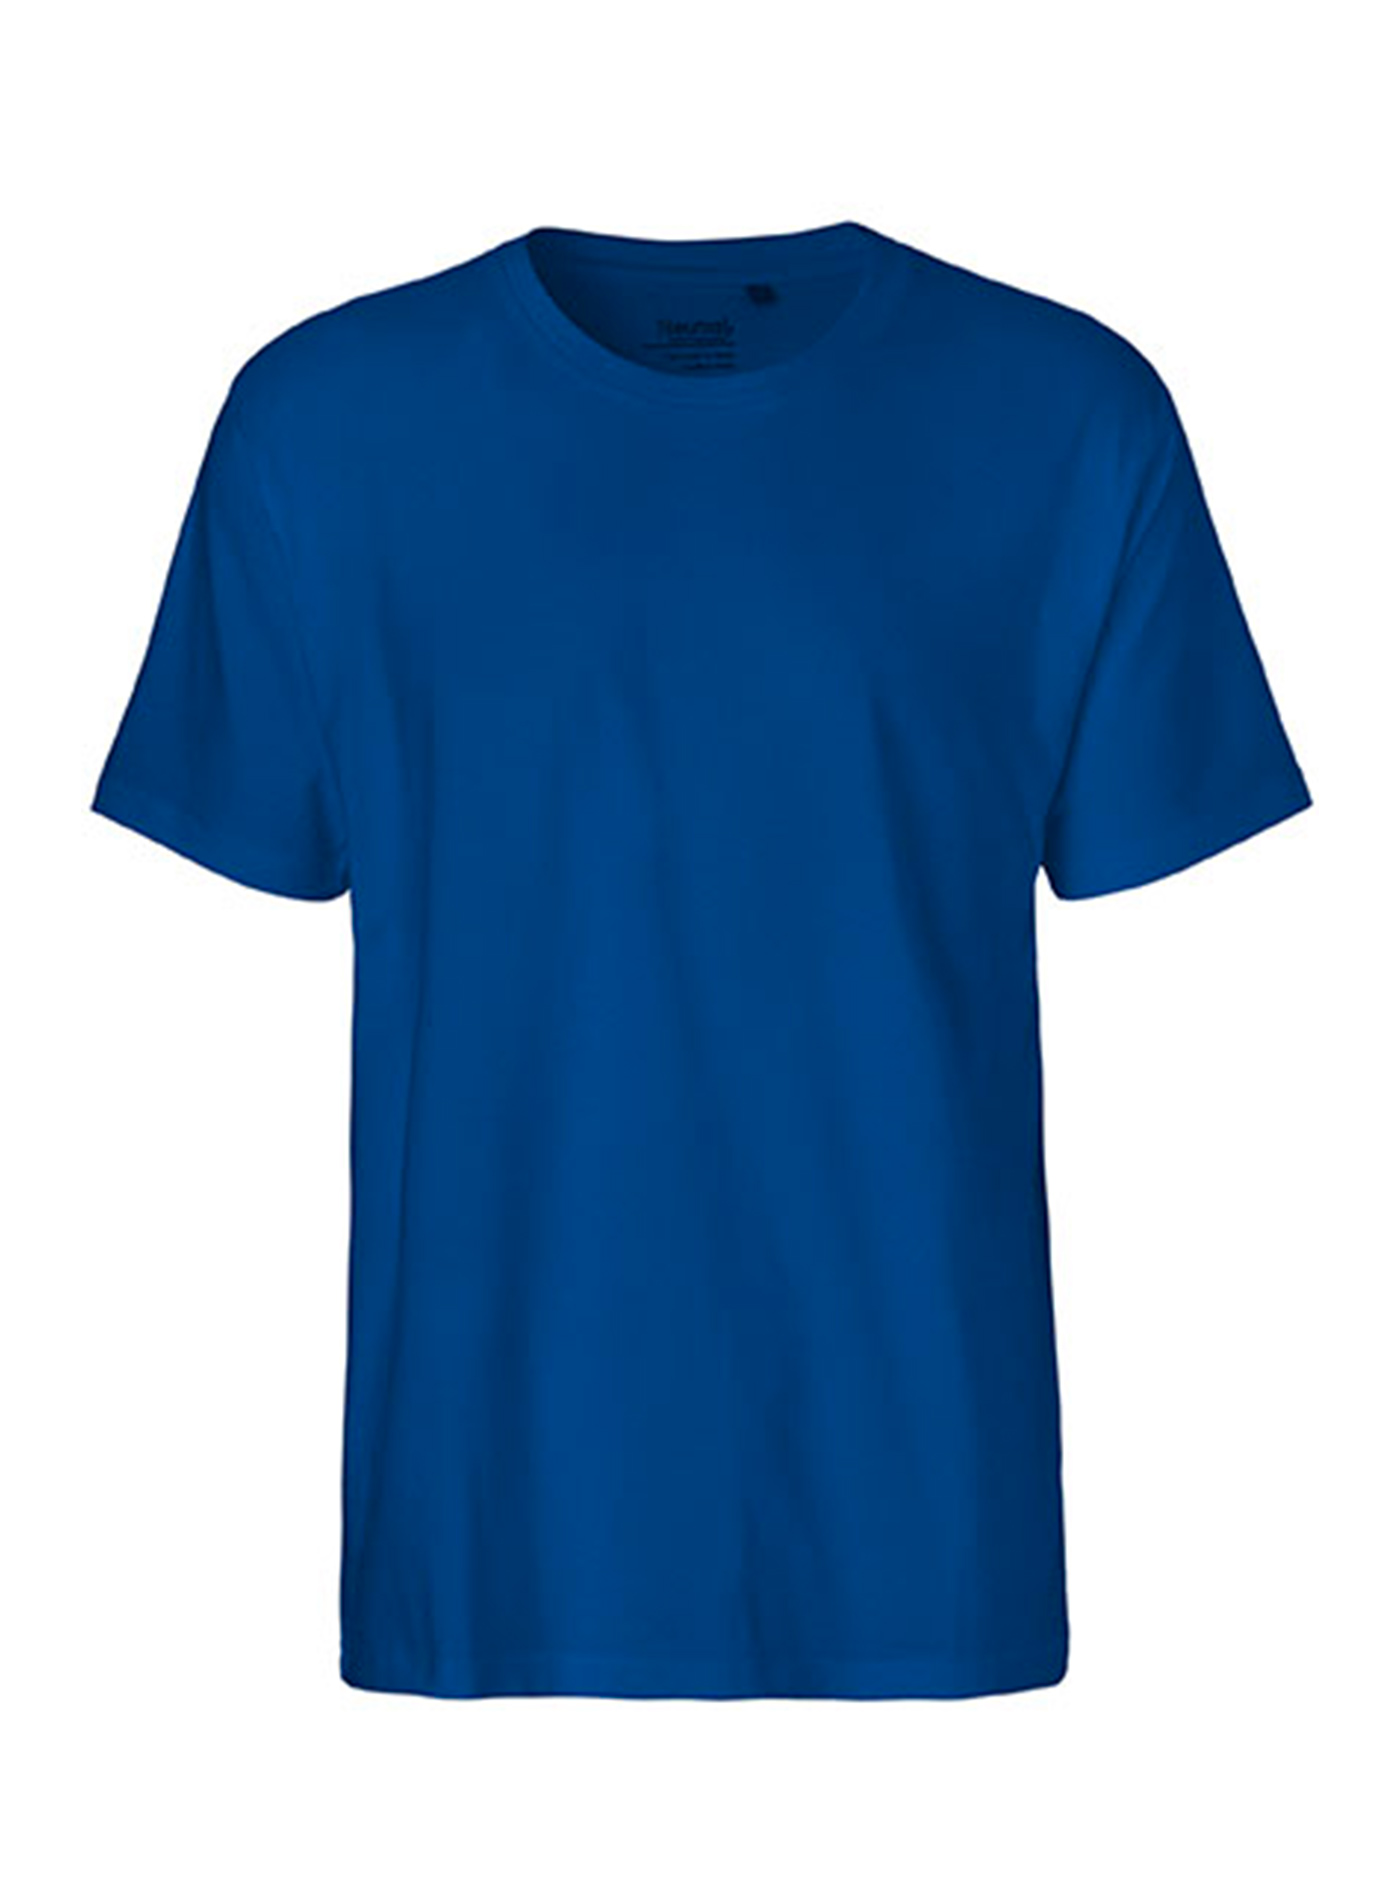 Pánské tričko Neutral Classic - Královská modrá XL